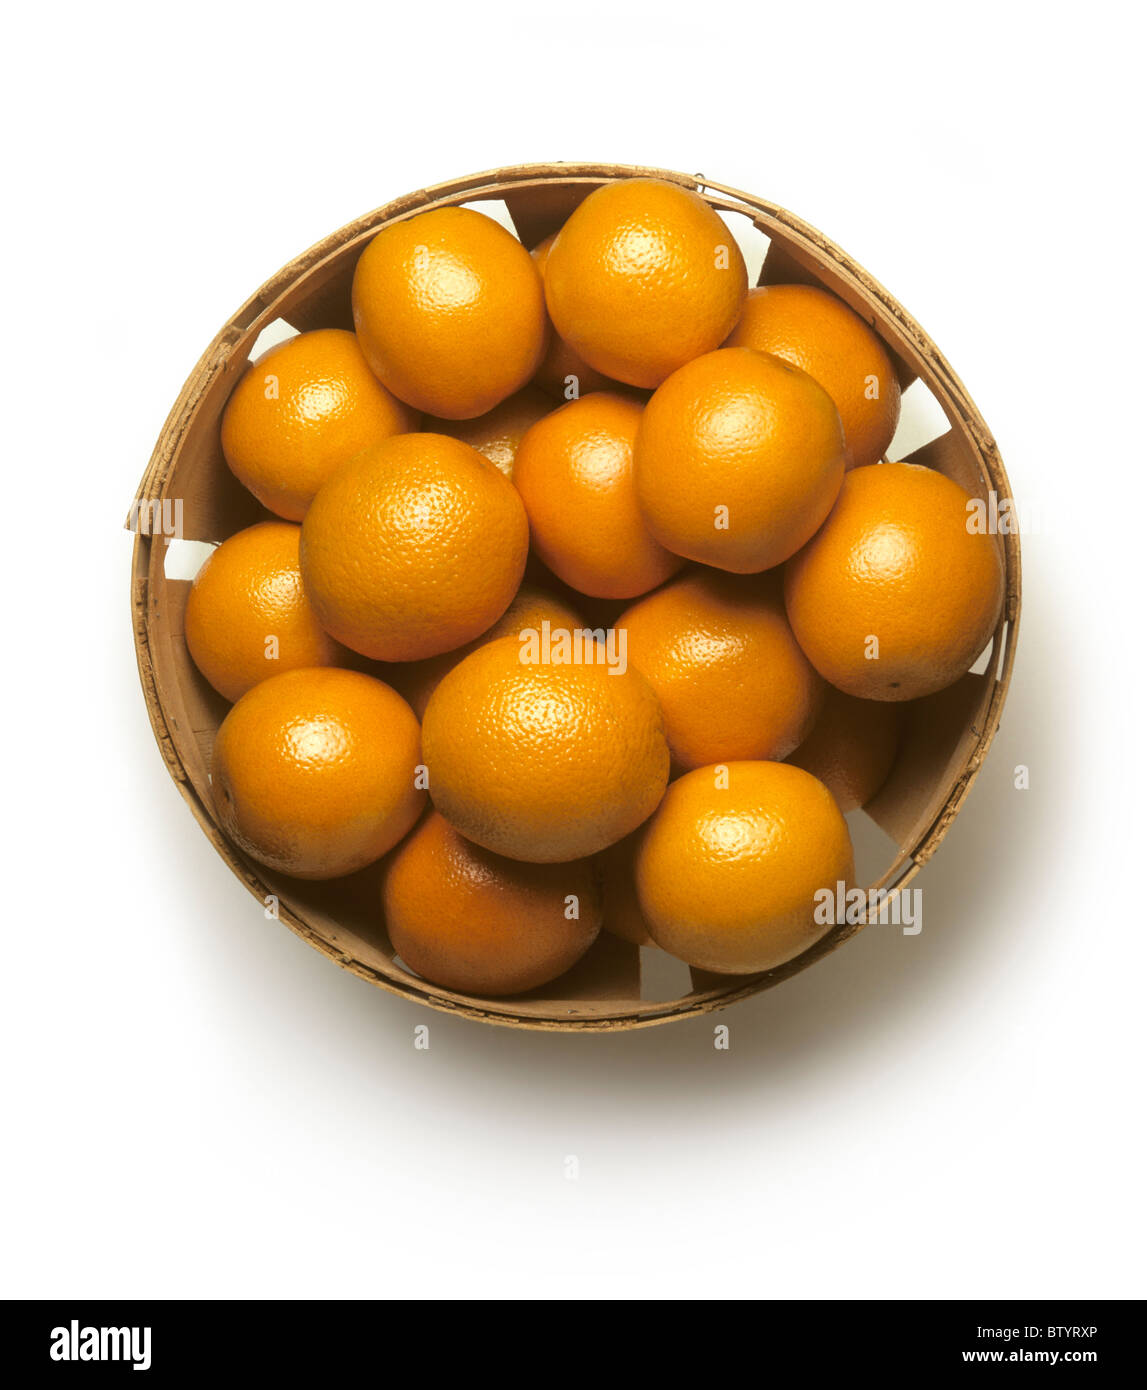 Bushel basket of fresh California oranges on a white background Stock Photo